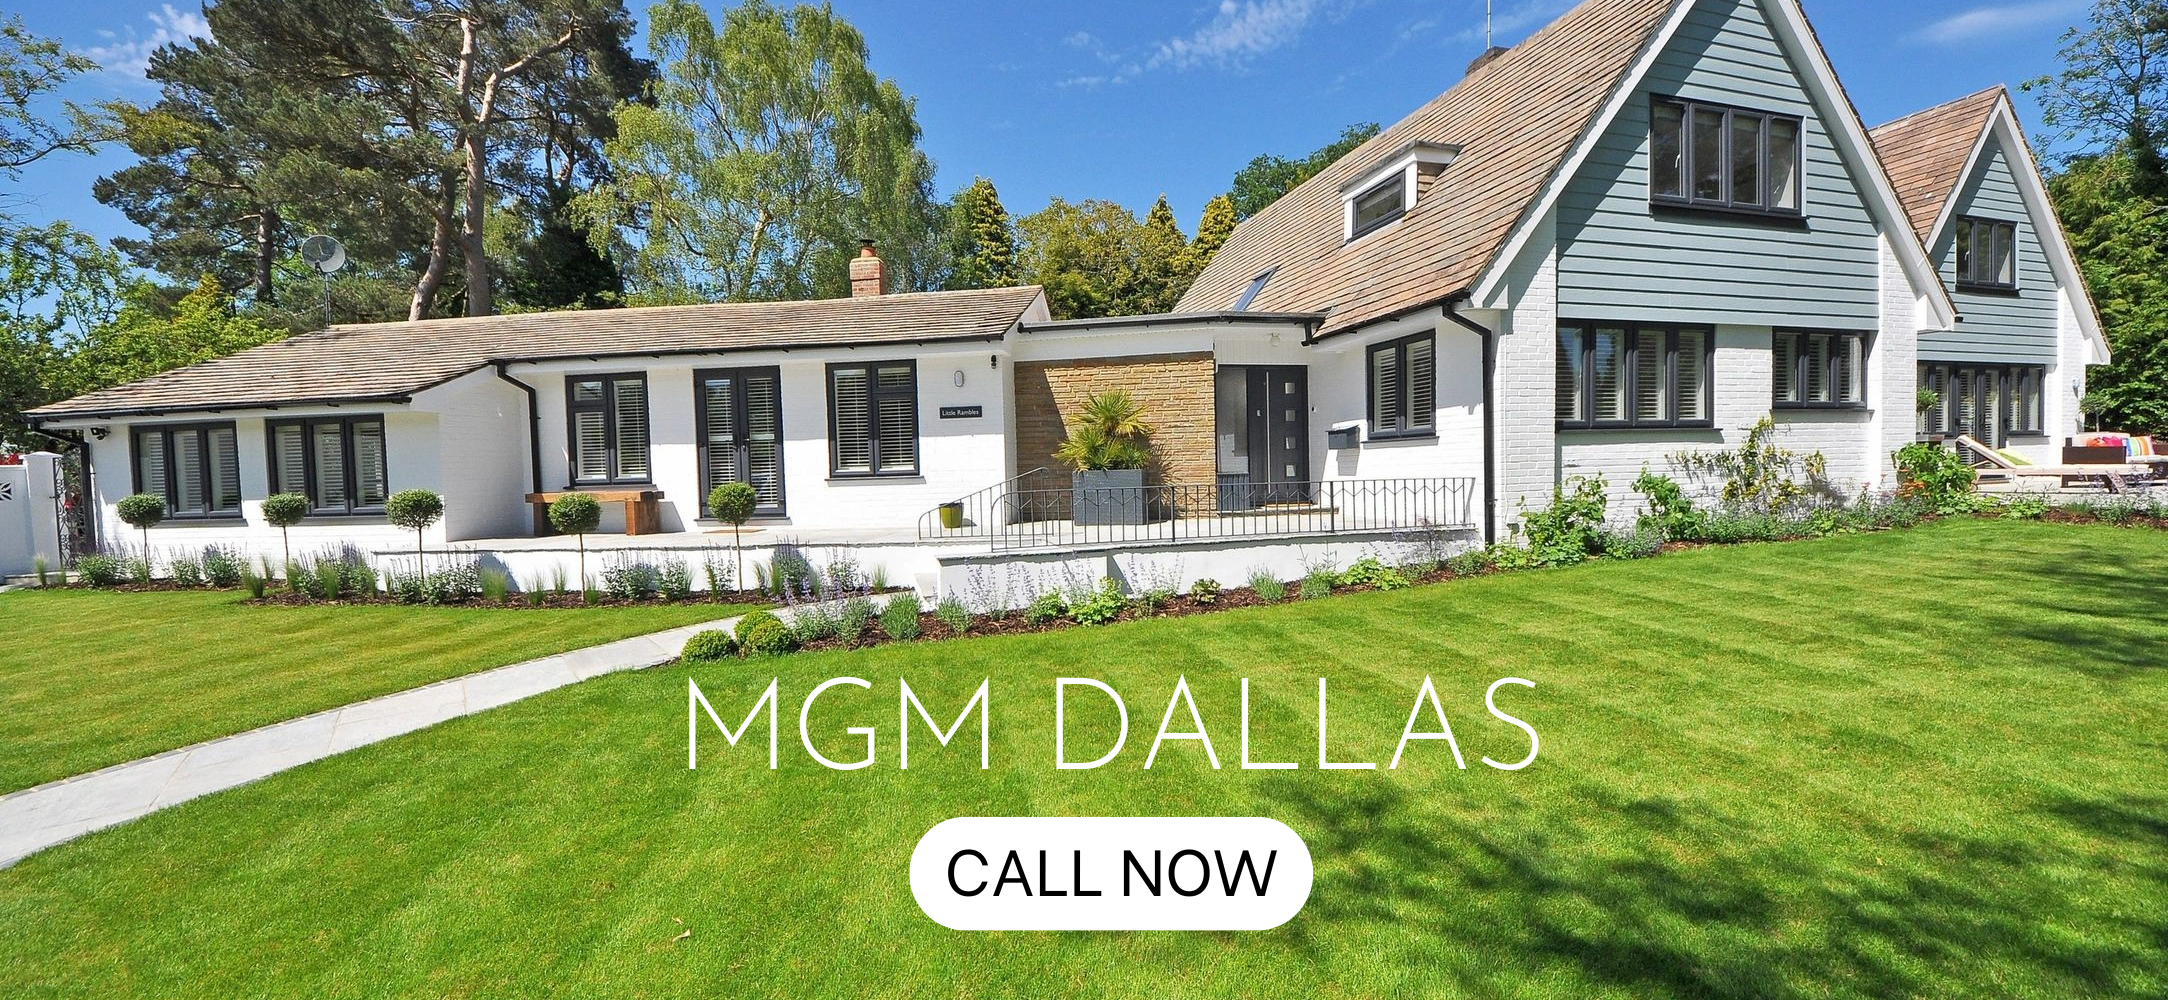 MGM Dallas Home